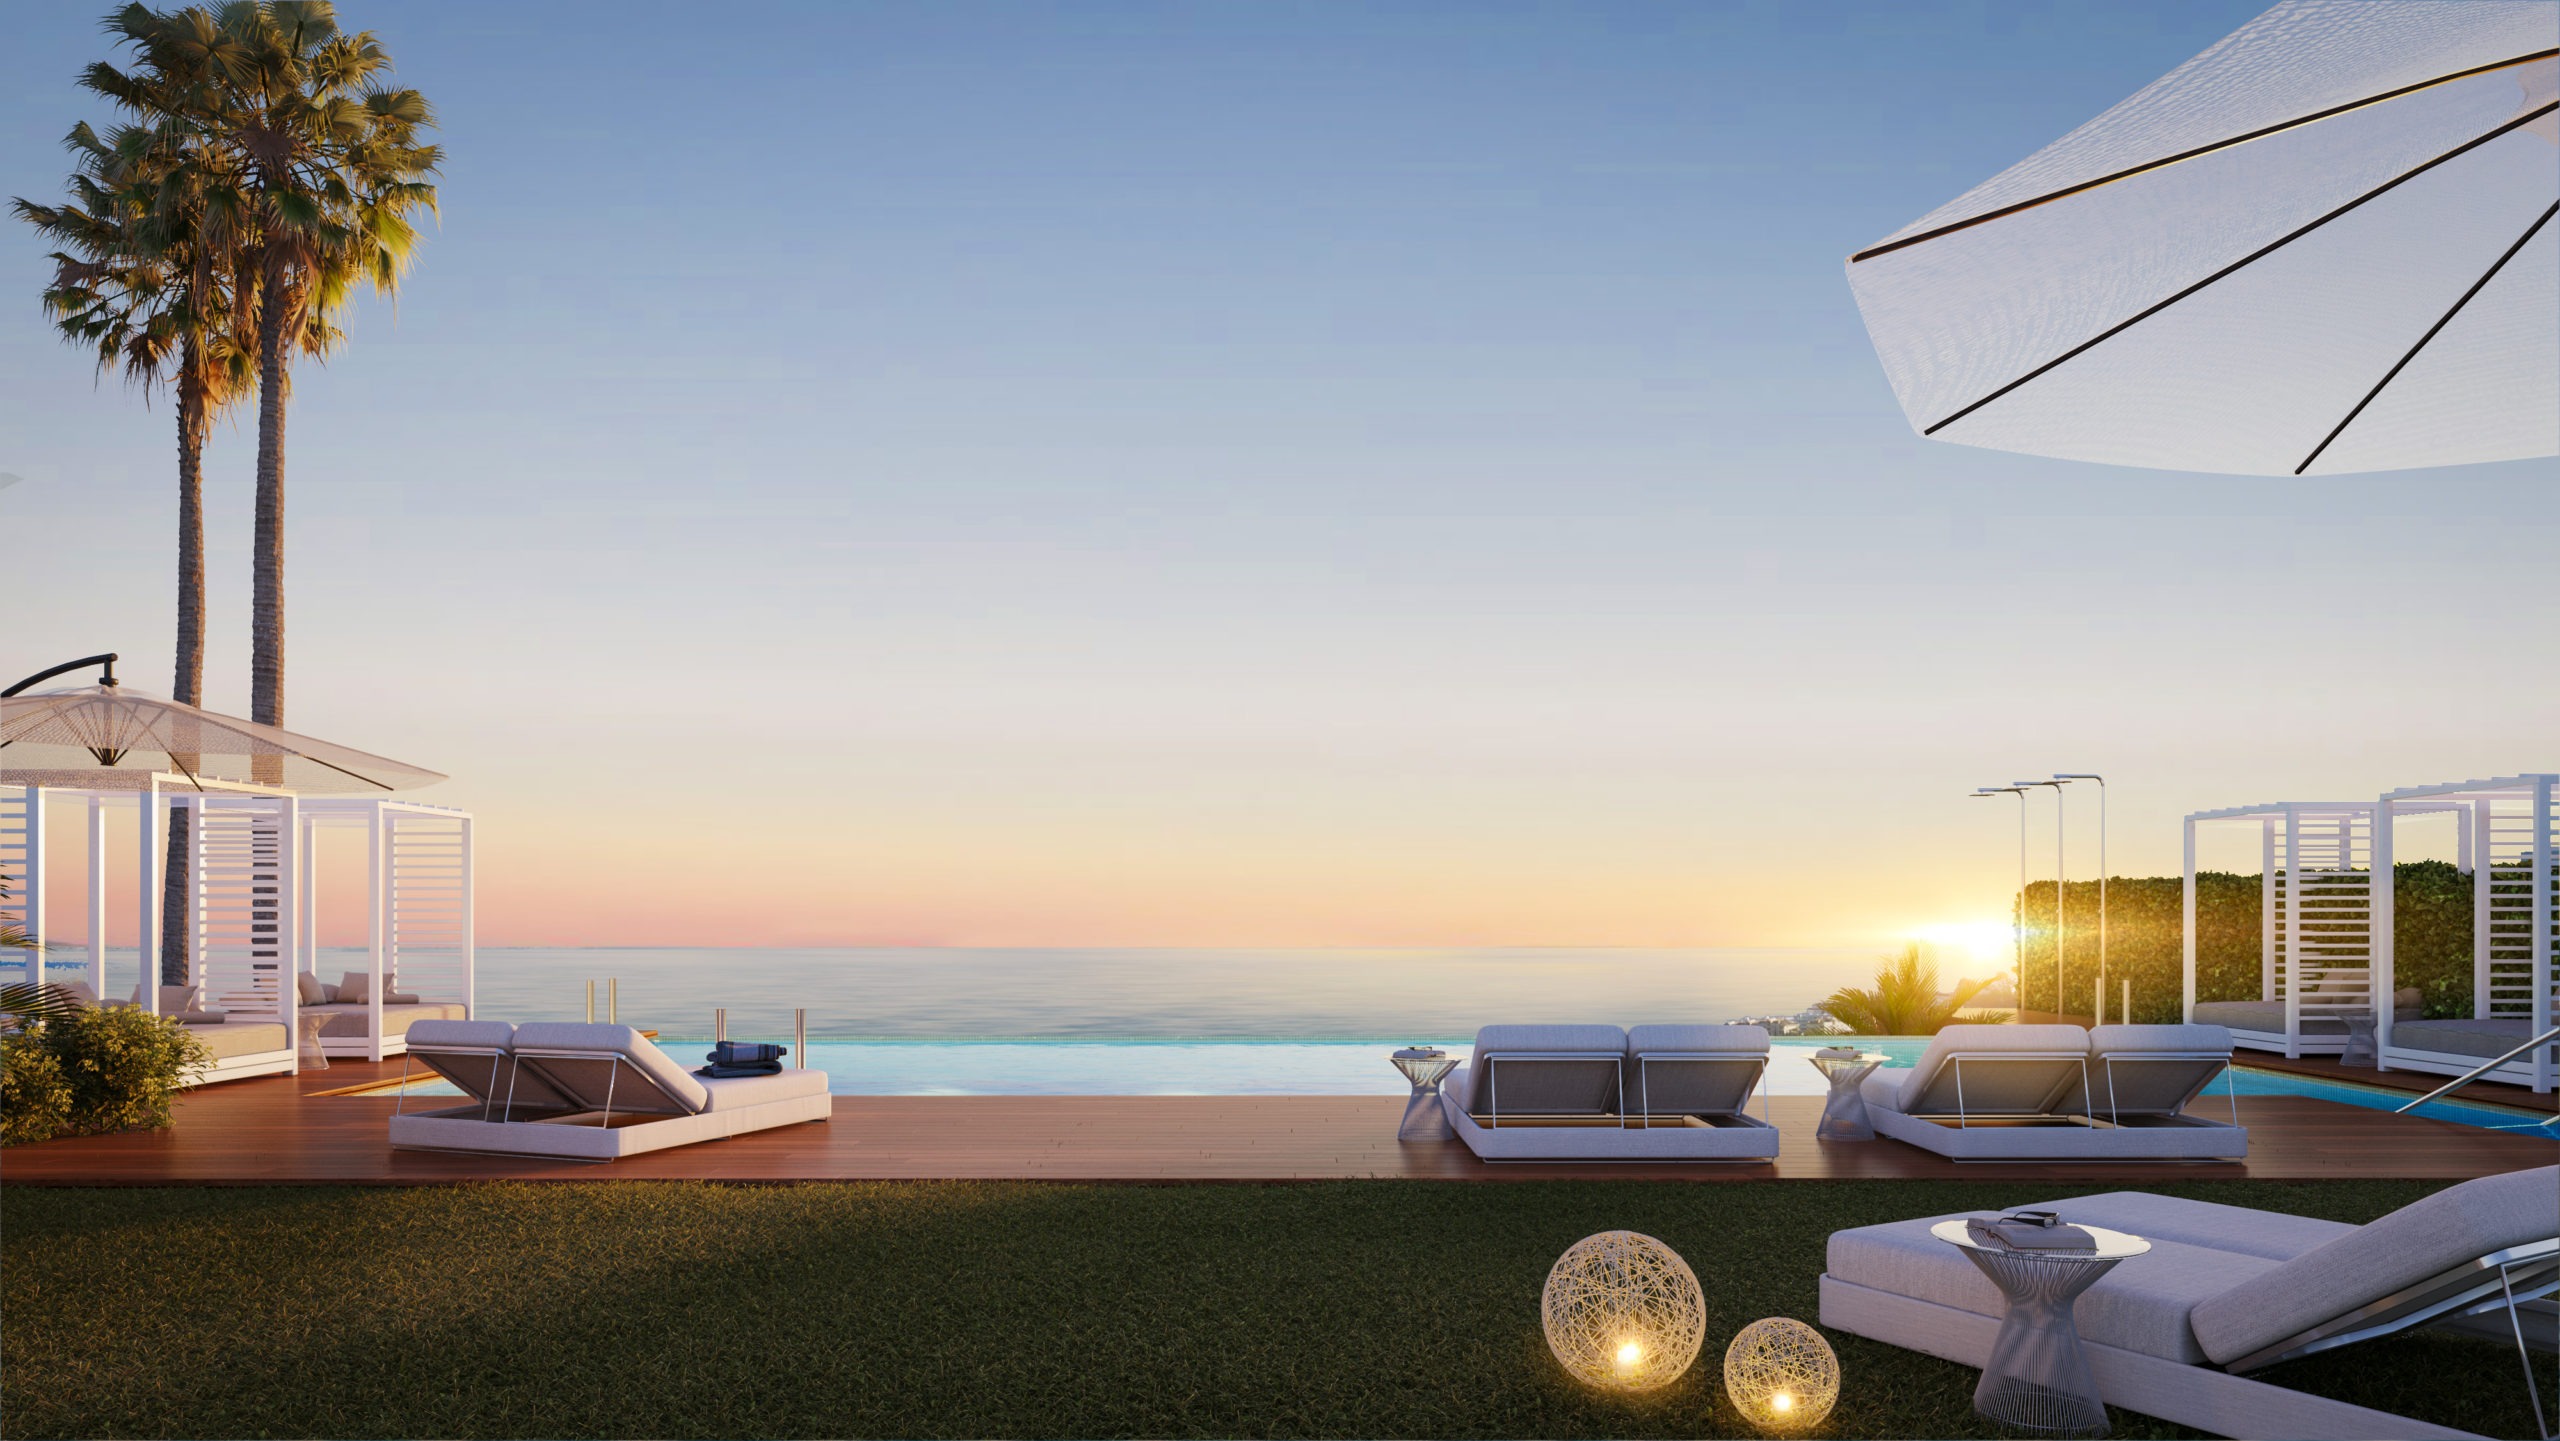 Exclusivo Ático de Lujo de 2 Dormitorios con Piscina Privada, ofreciendo a sus Propietarios un trocito de paraíso en la Costa del Sol a tan solo 15 min de Marbella.